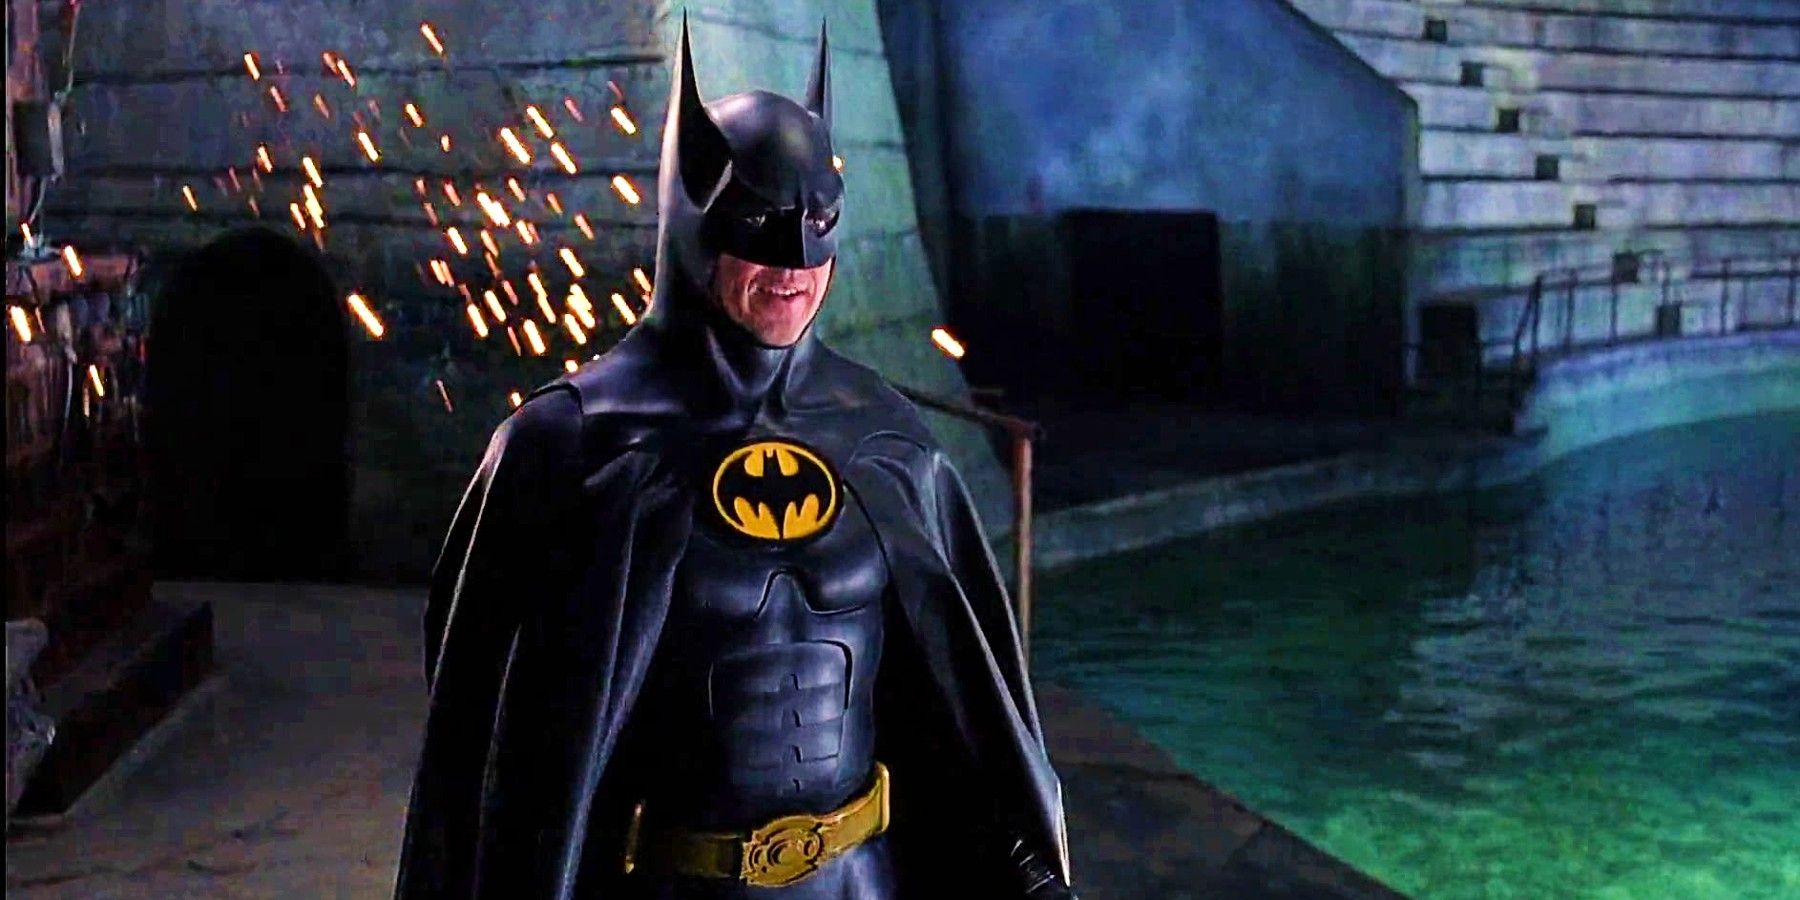 Michael Keaton As Bruce Wayne Standing In Penguin's Lair In Batman Returns